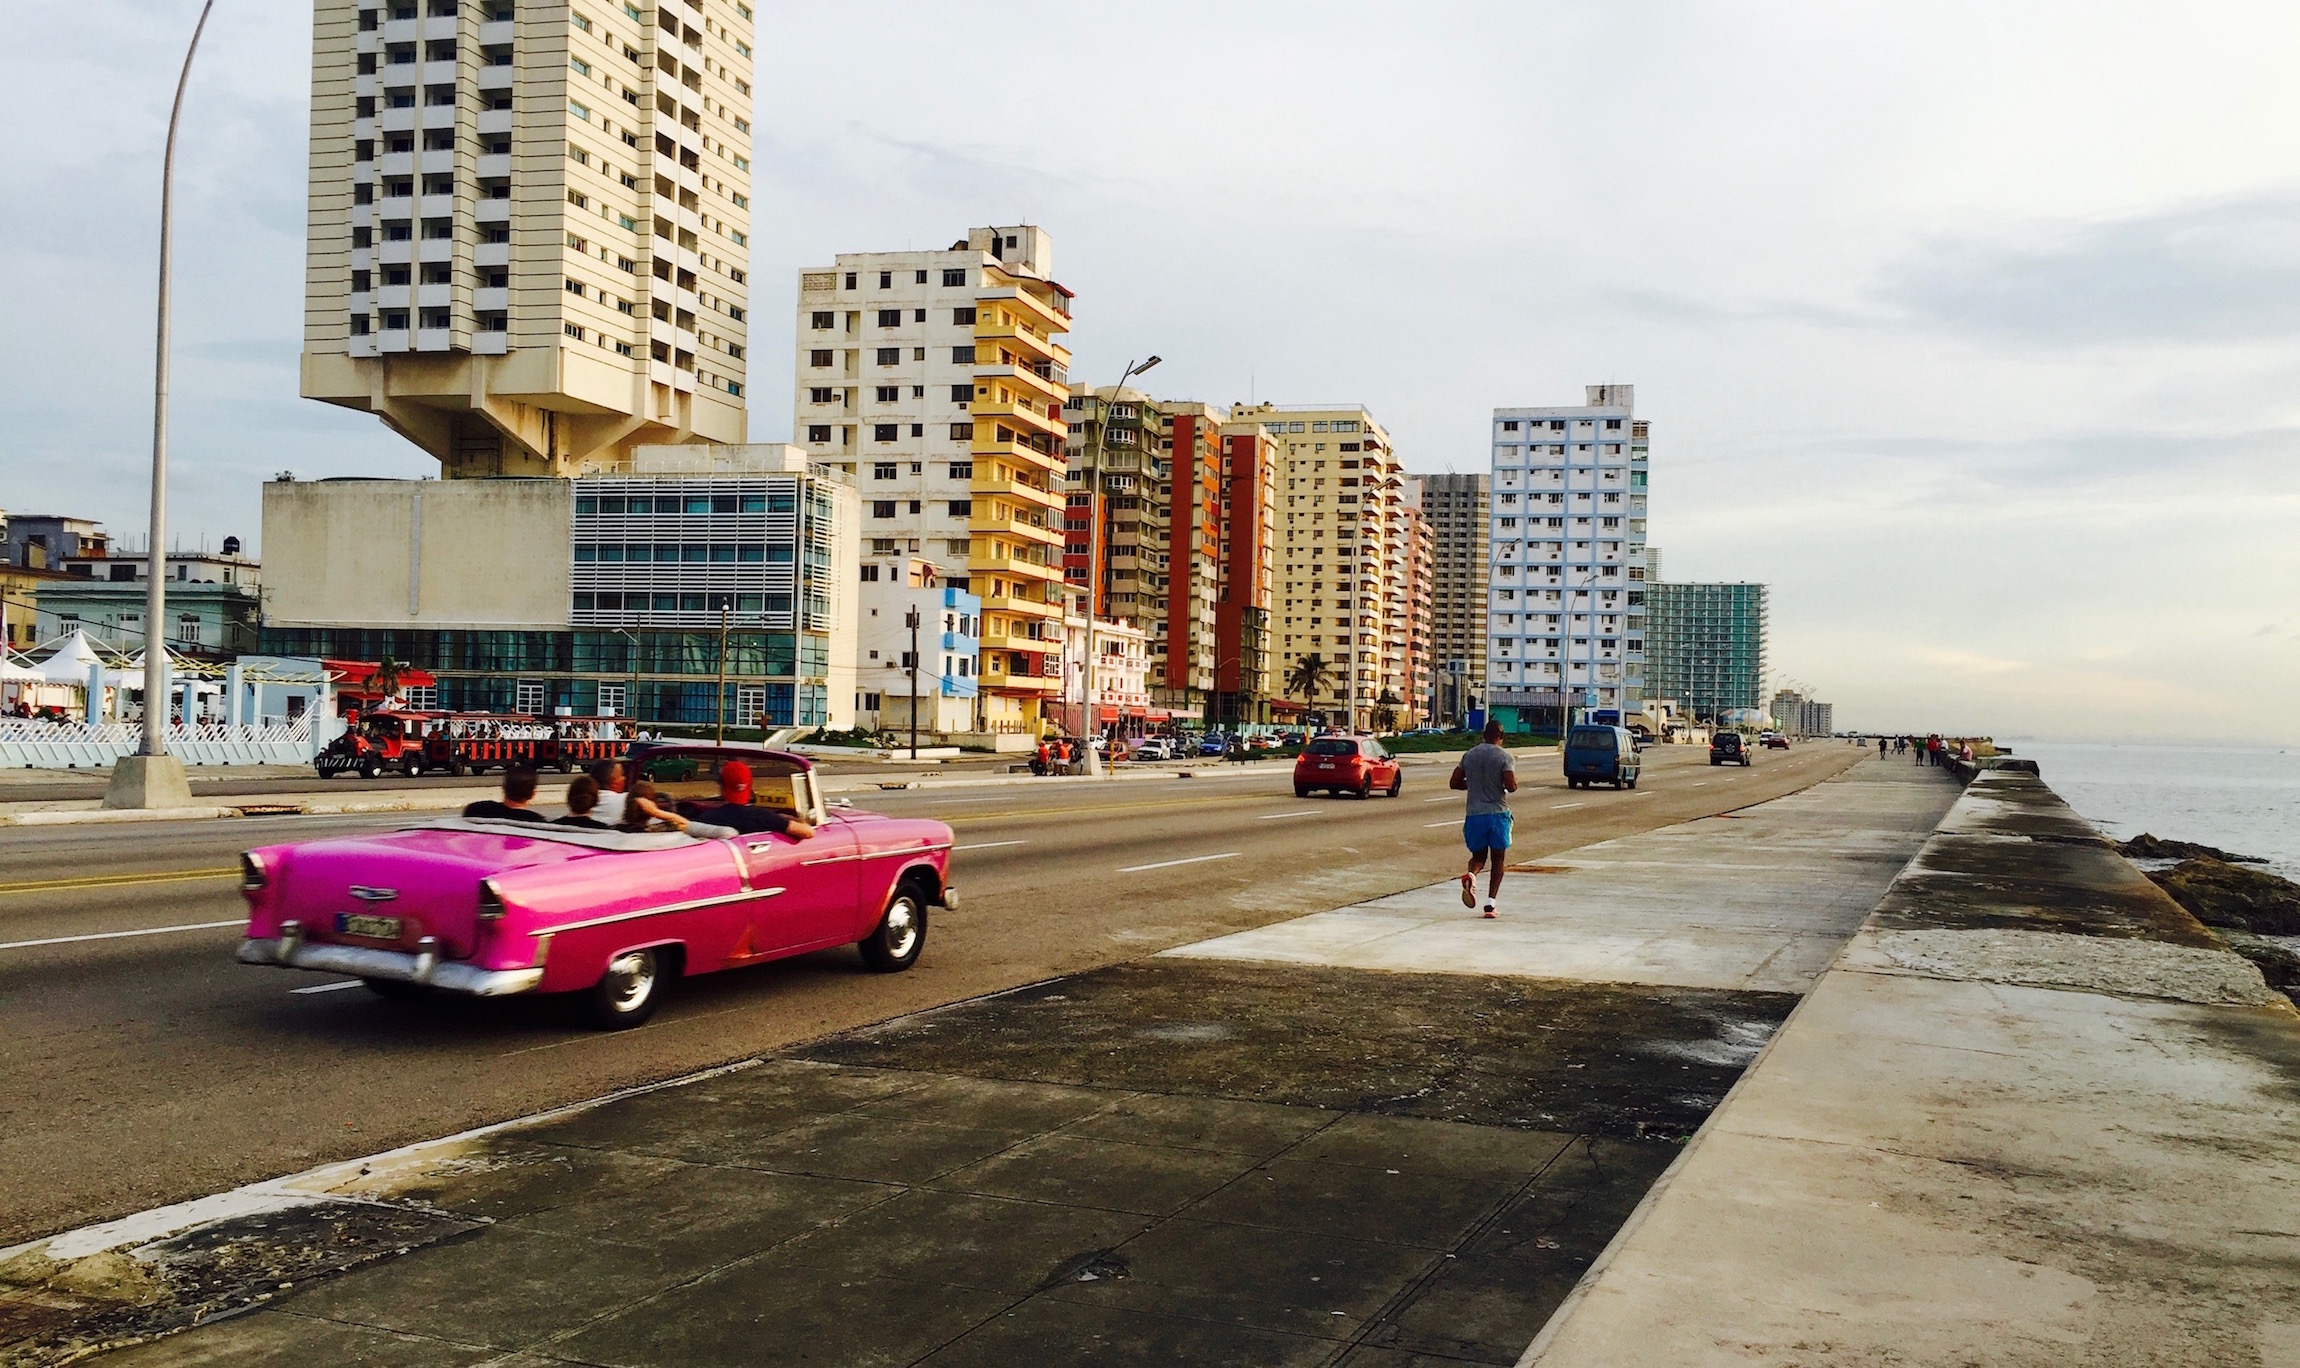 Havana's famed Malecon